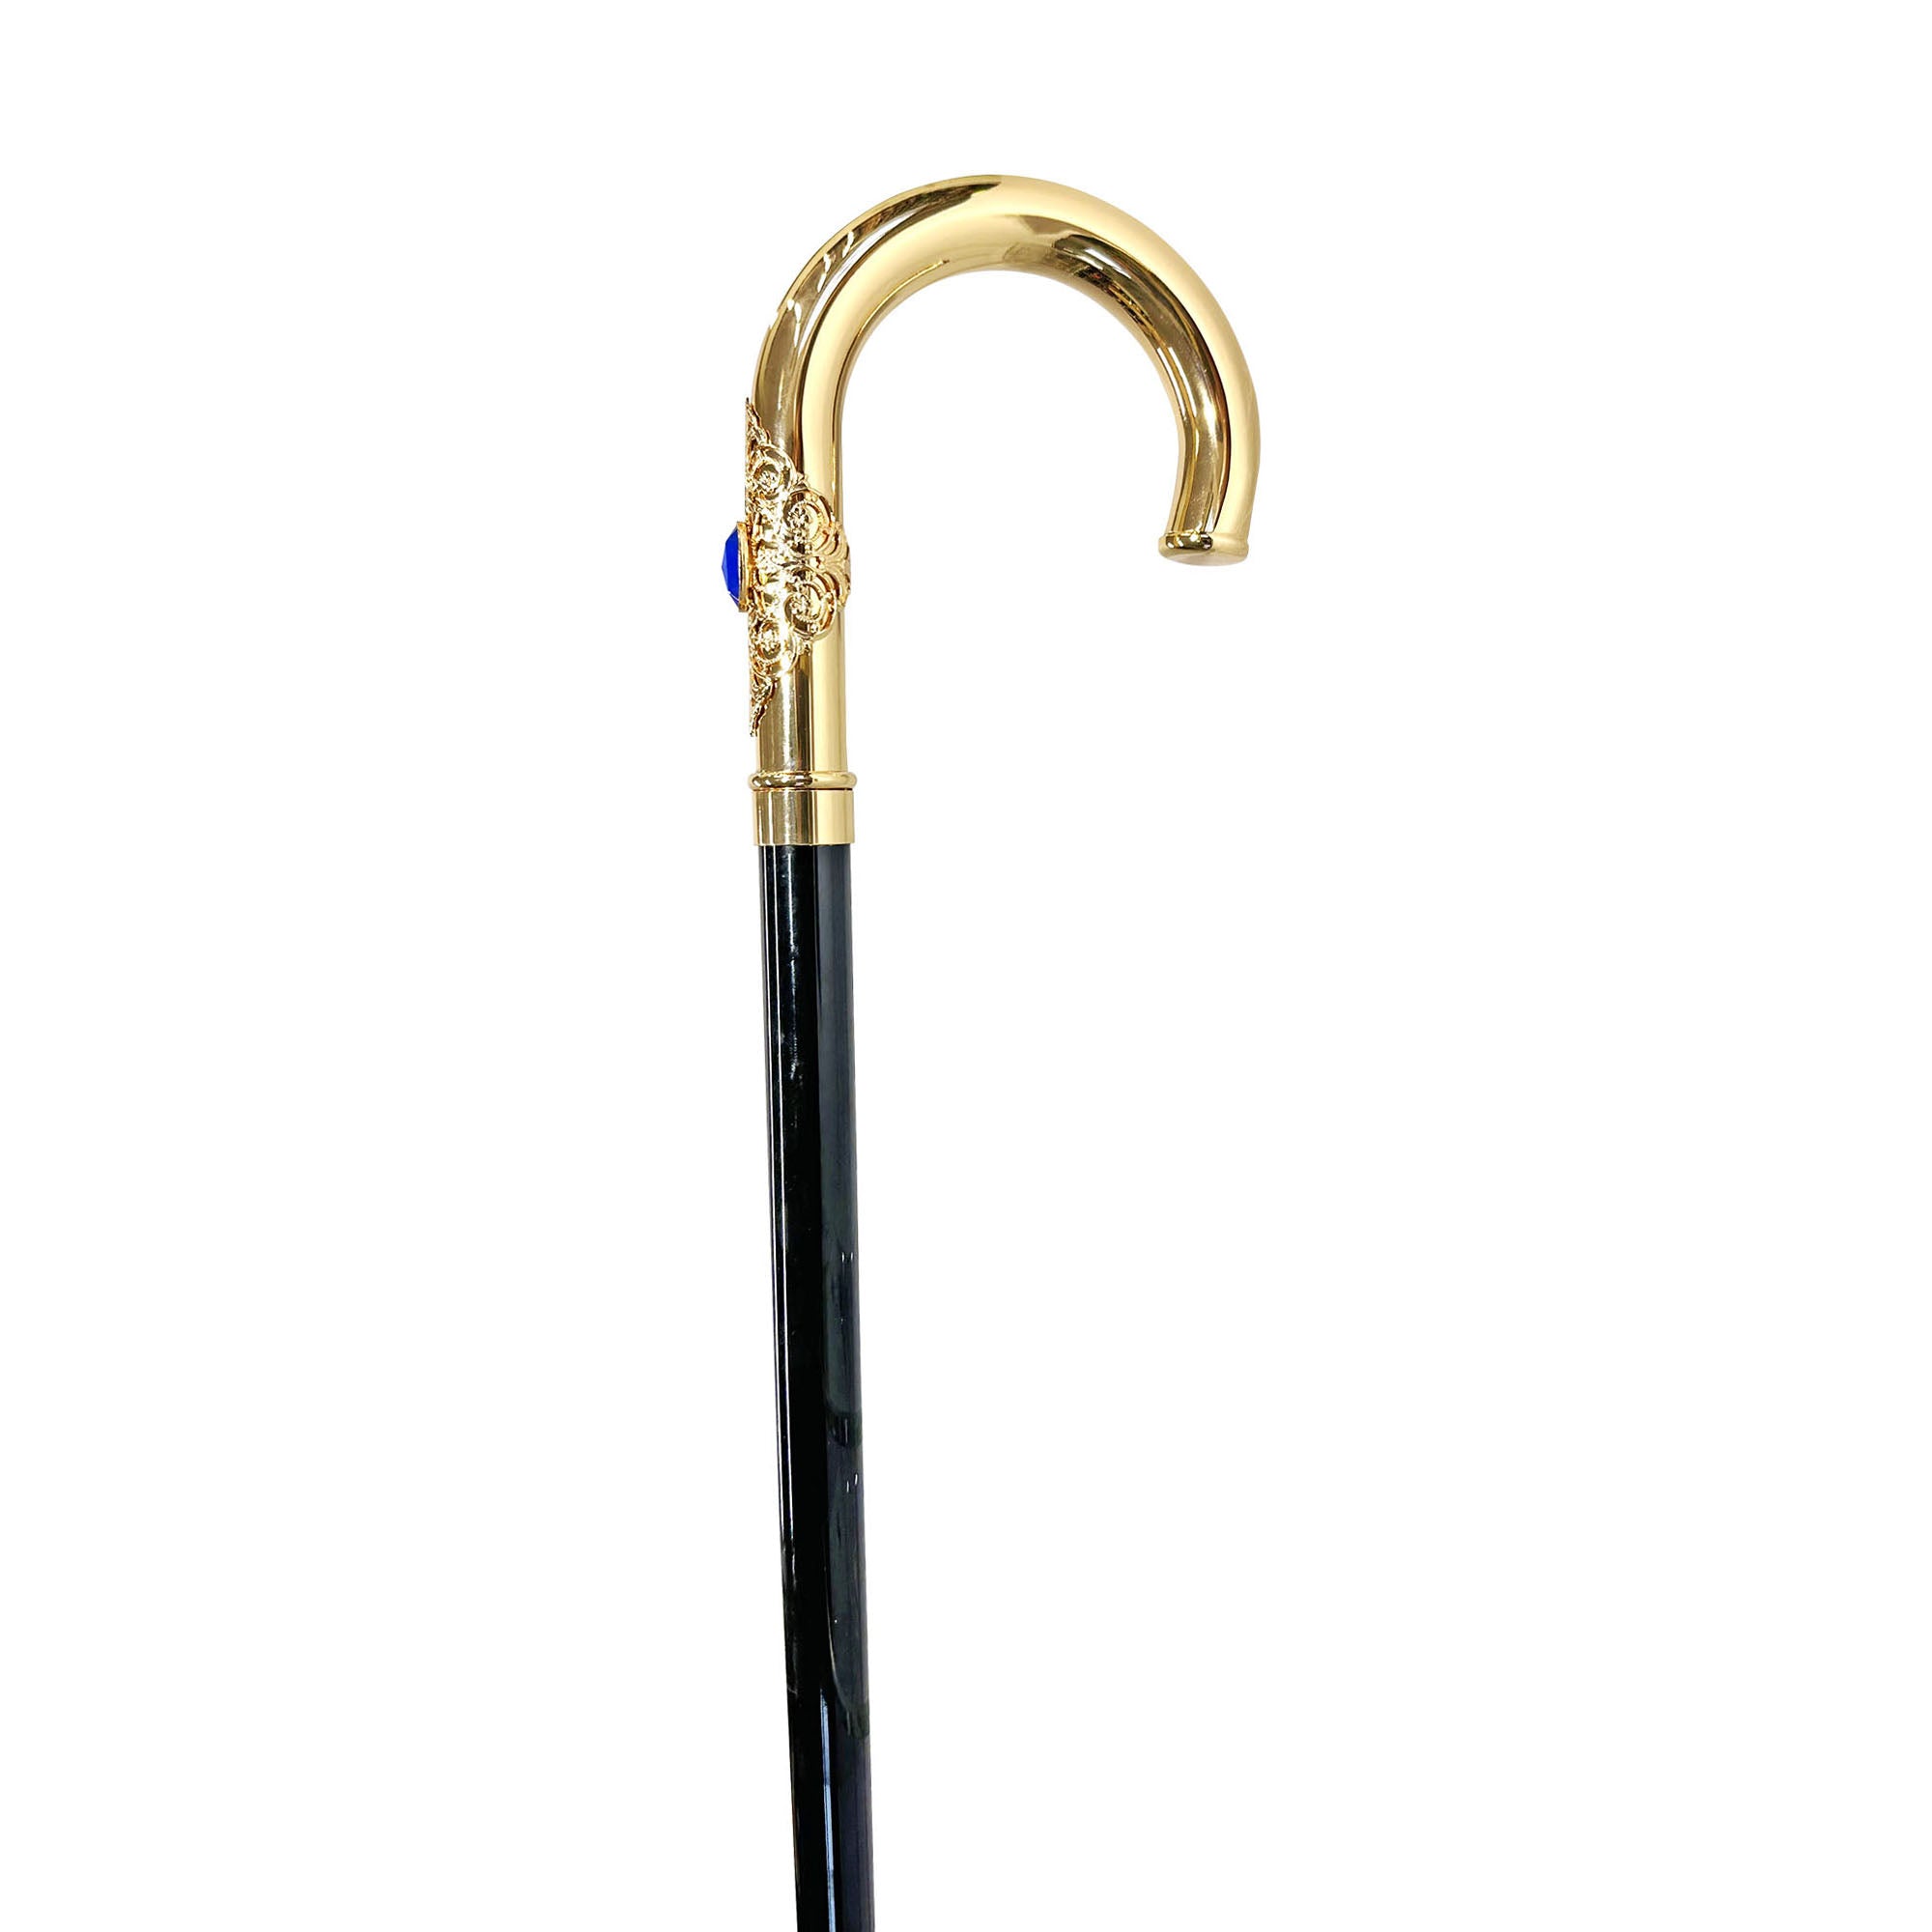 Elegant cane with Blue stone